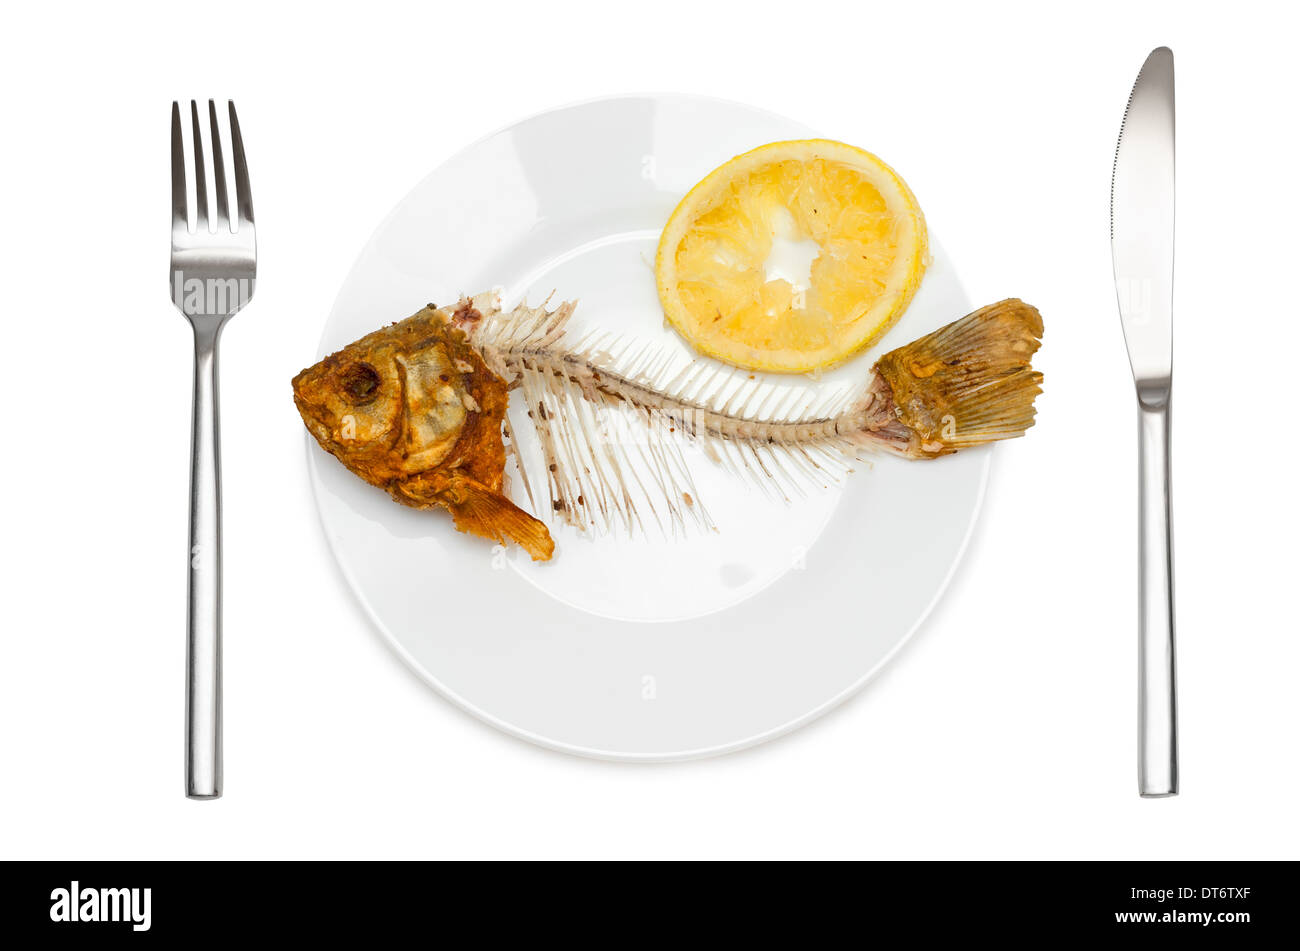 Squelette de poisson avec jus de citron sur l'assiette - symbole de la disette et la misère. Isolé sur fond blanc. Banque D'Images